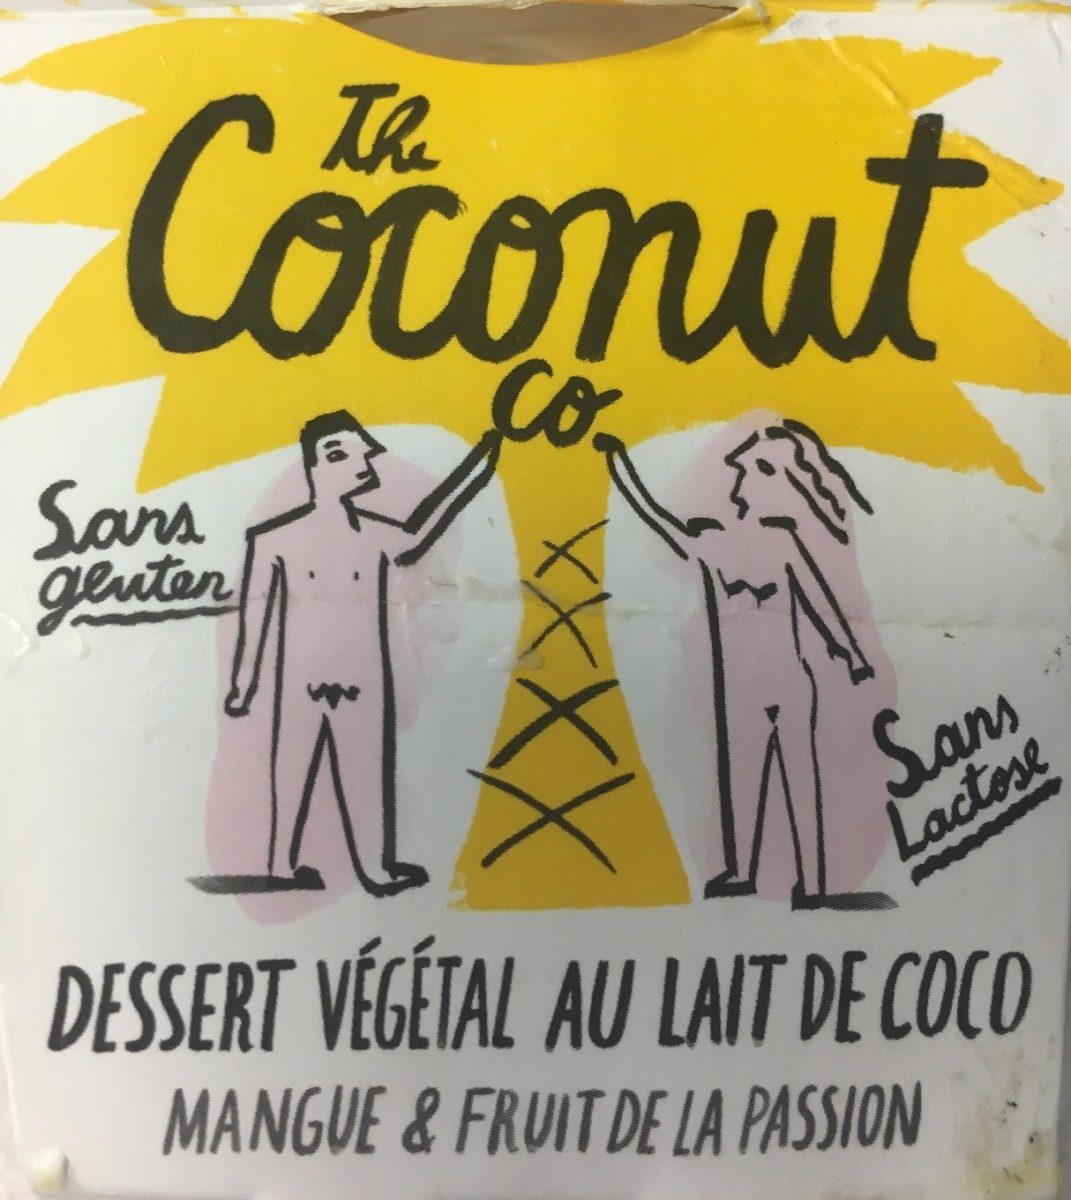 Dessert végétal au lait de coco - Product - fr